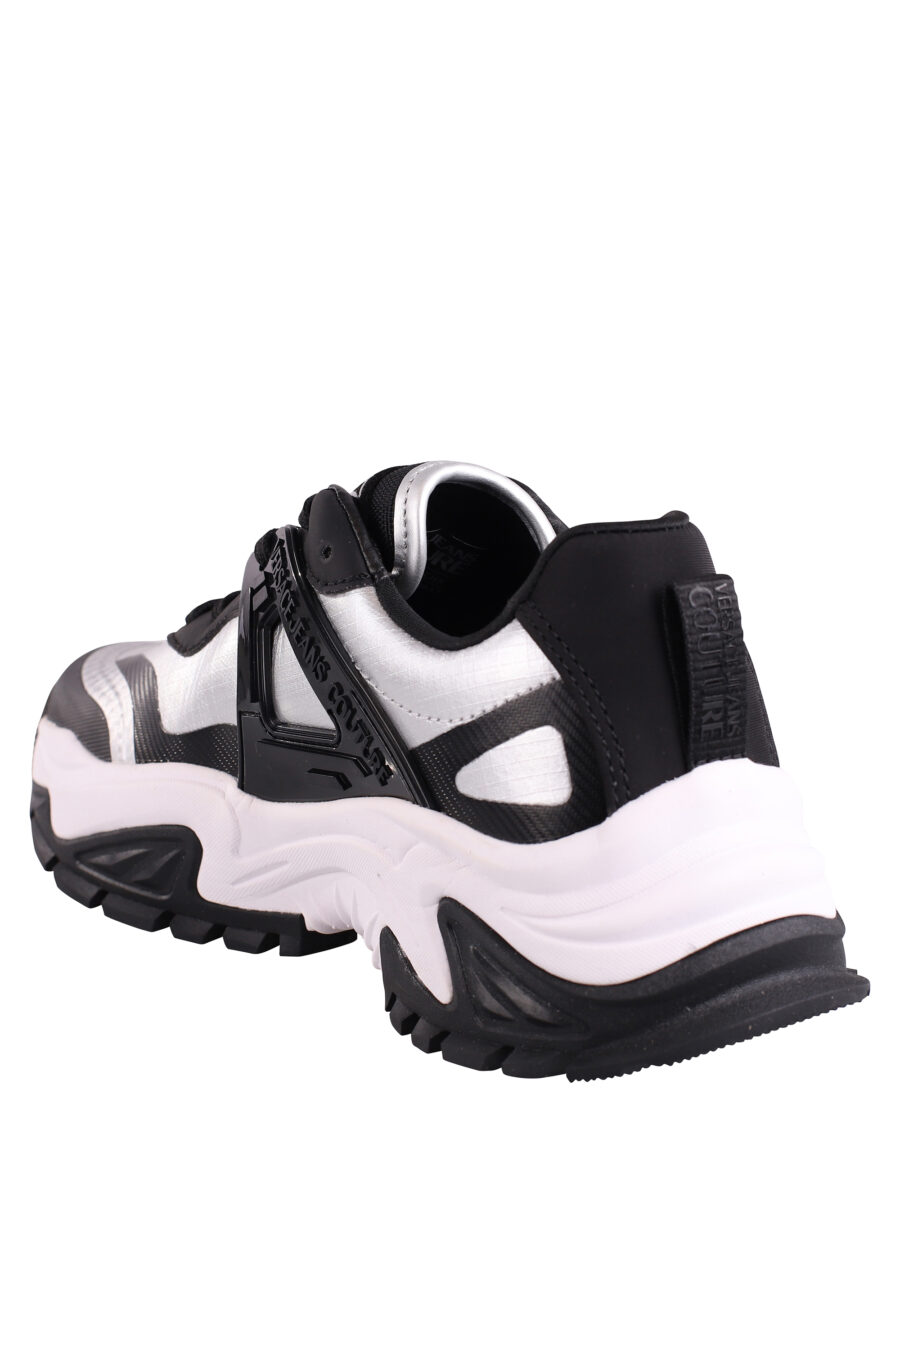 Zapatillas negras con plateado y logo - IMG 9054